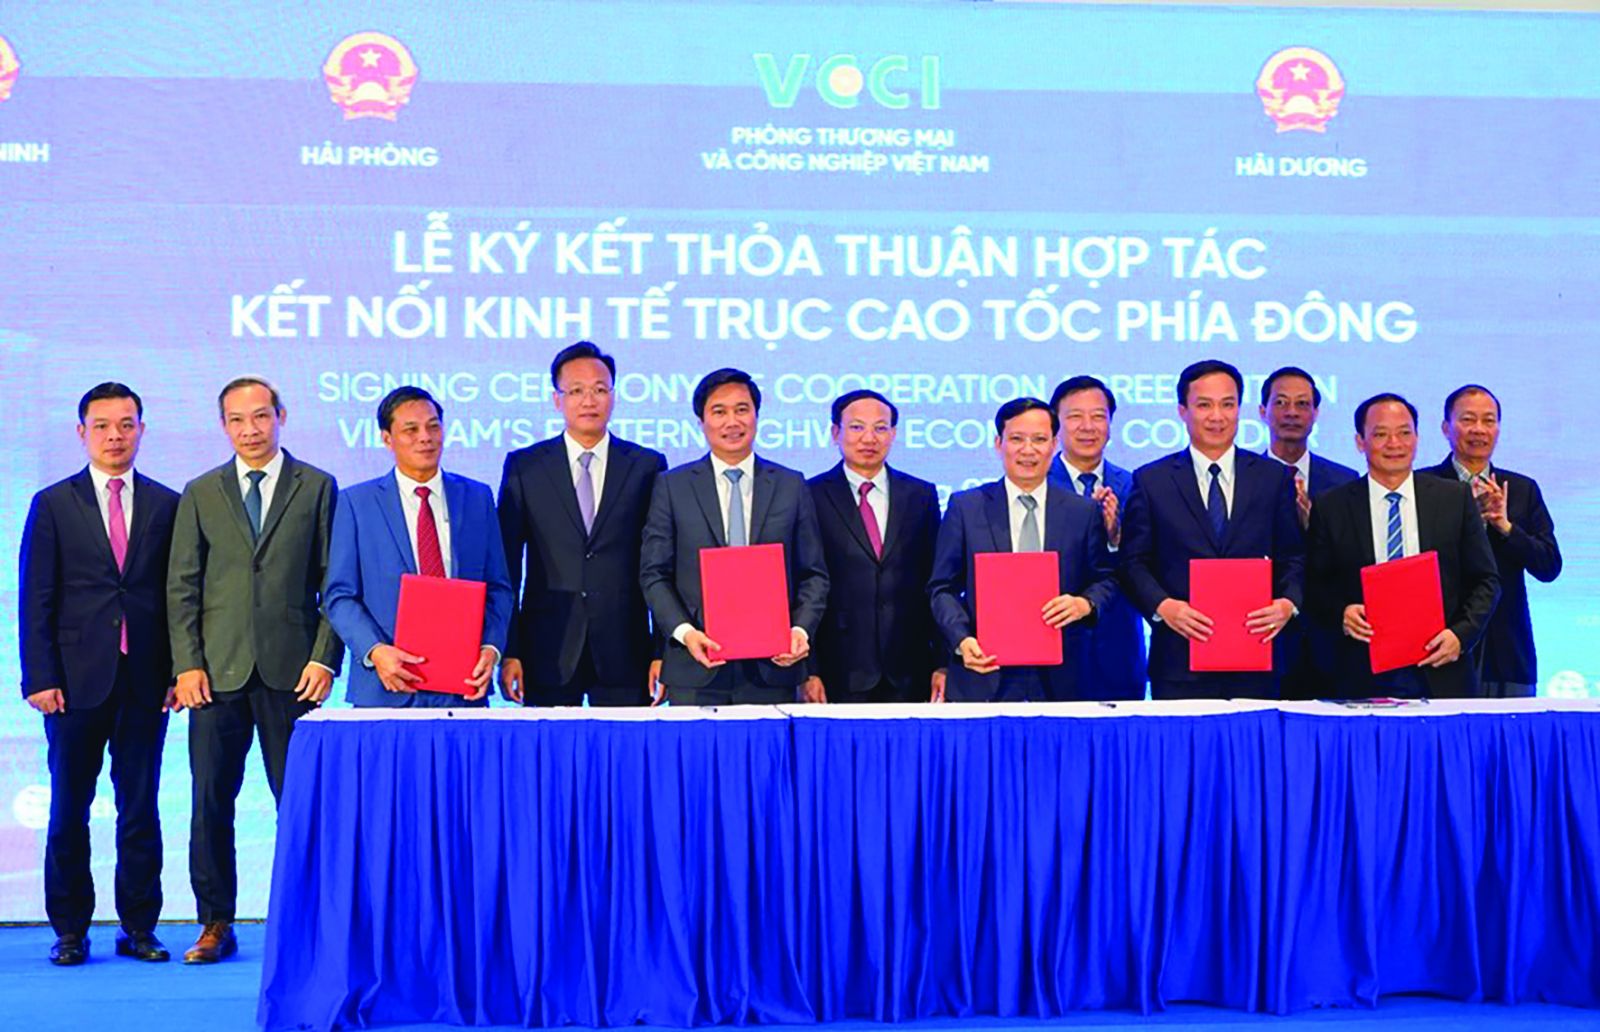  Lãnh đạo VCCI và 4 địa phương Quảng Ninh, Hải Phòng, Hải Dương, Hưng Yên tổ chức lễ ký kết Thỏa thuận kết nối kinh tế trục cao tốc phía Đông